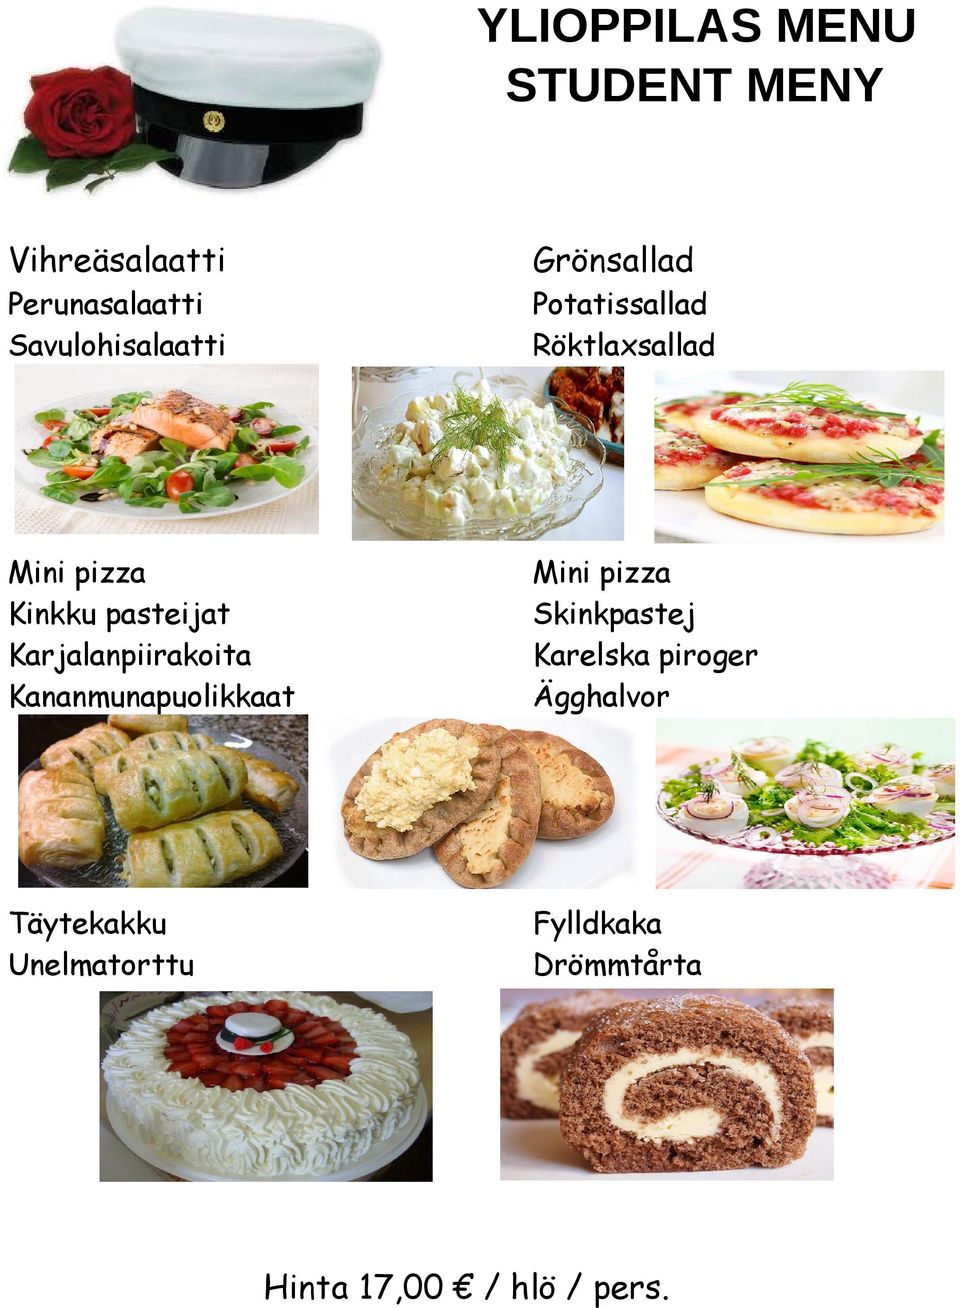 Karjalanpiirakoita Kananmunapuolikkaat Mini pizza Skinkpastej Karelska